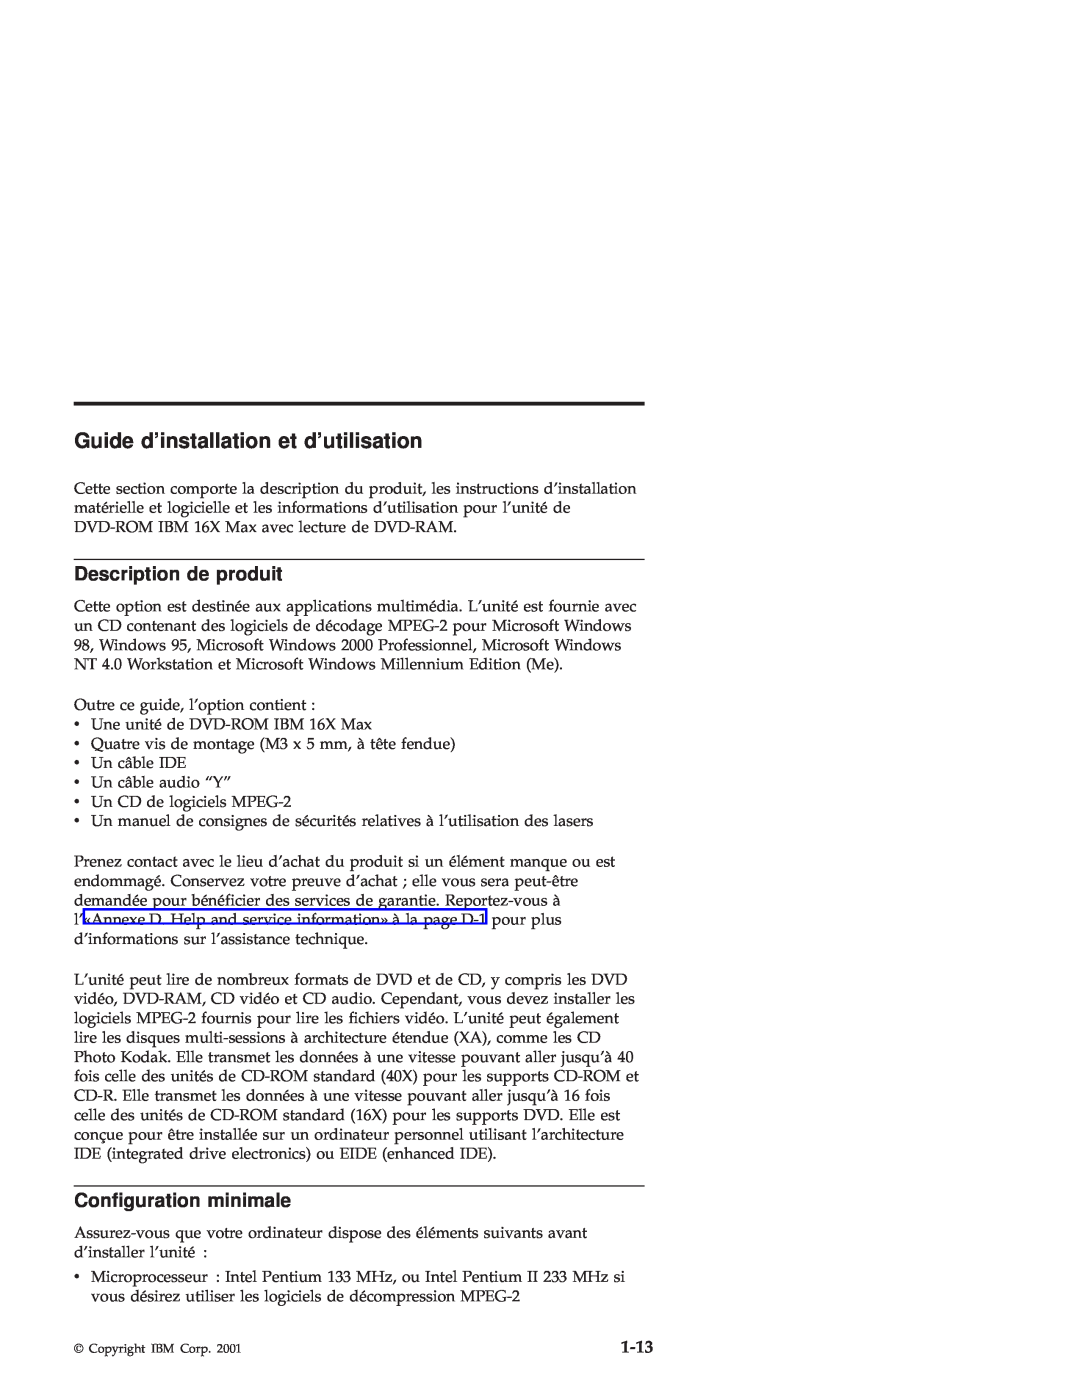 IBM 71P7285 manual Guide dinstallation et dutilisation, Description de produit, Configuration minimale, 1-13 